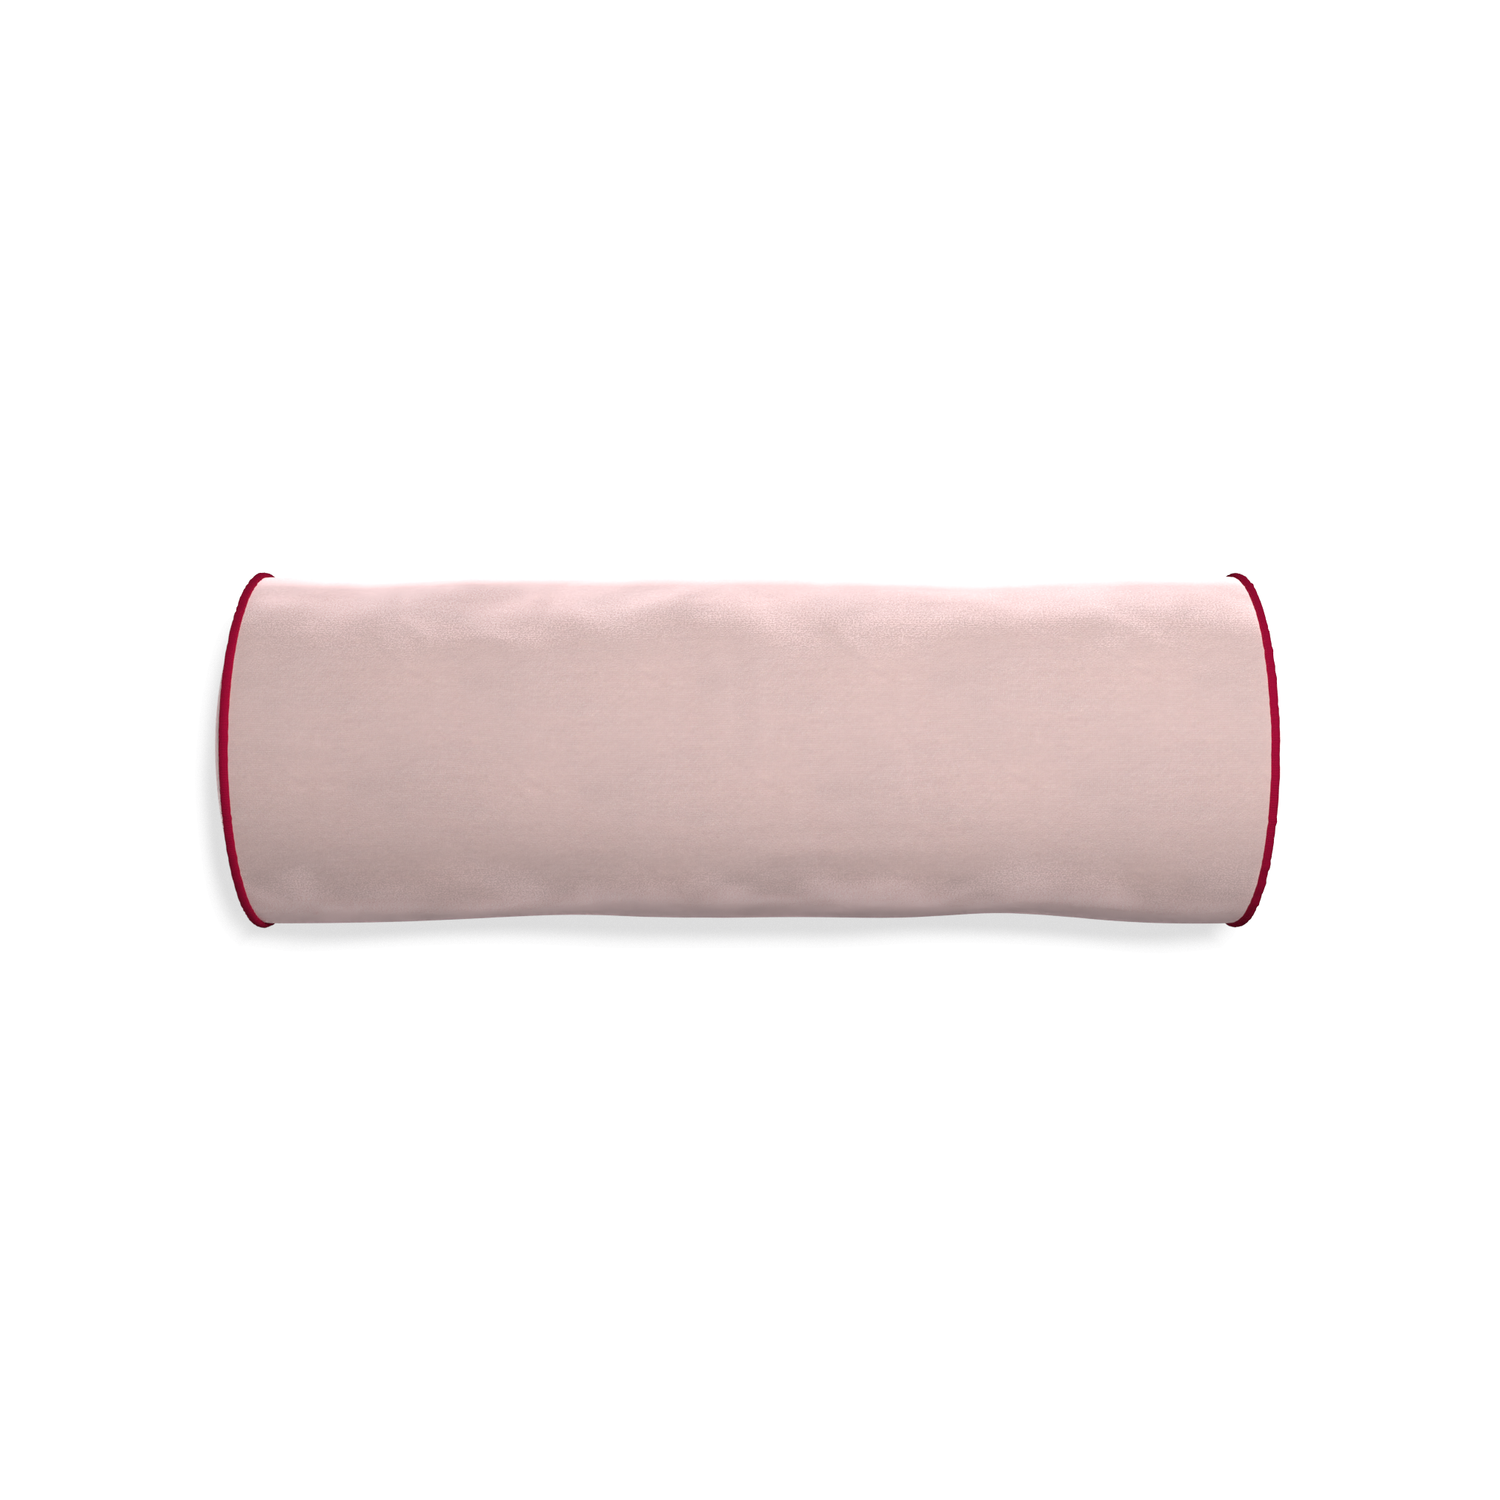 Bolster rose velvet custom pillow with raspberry piping on white background